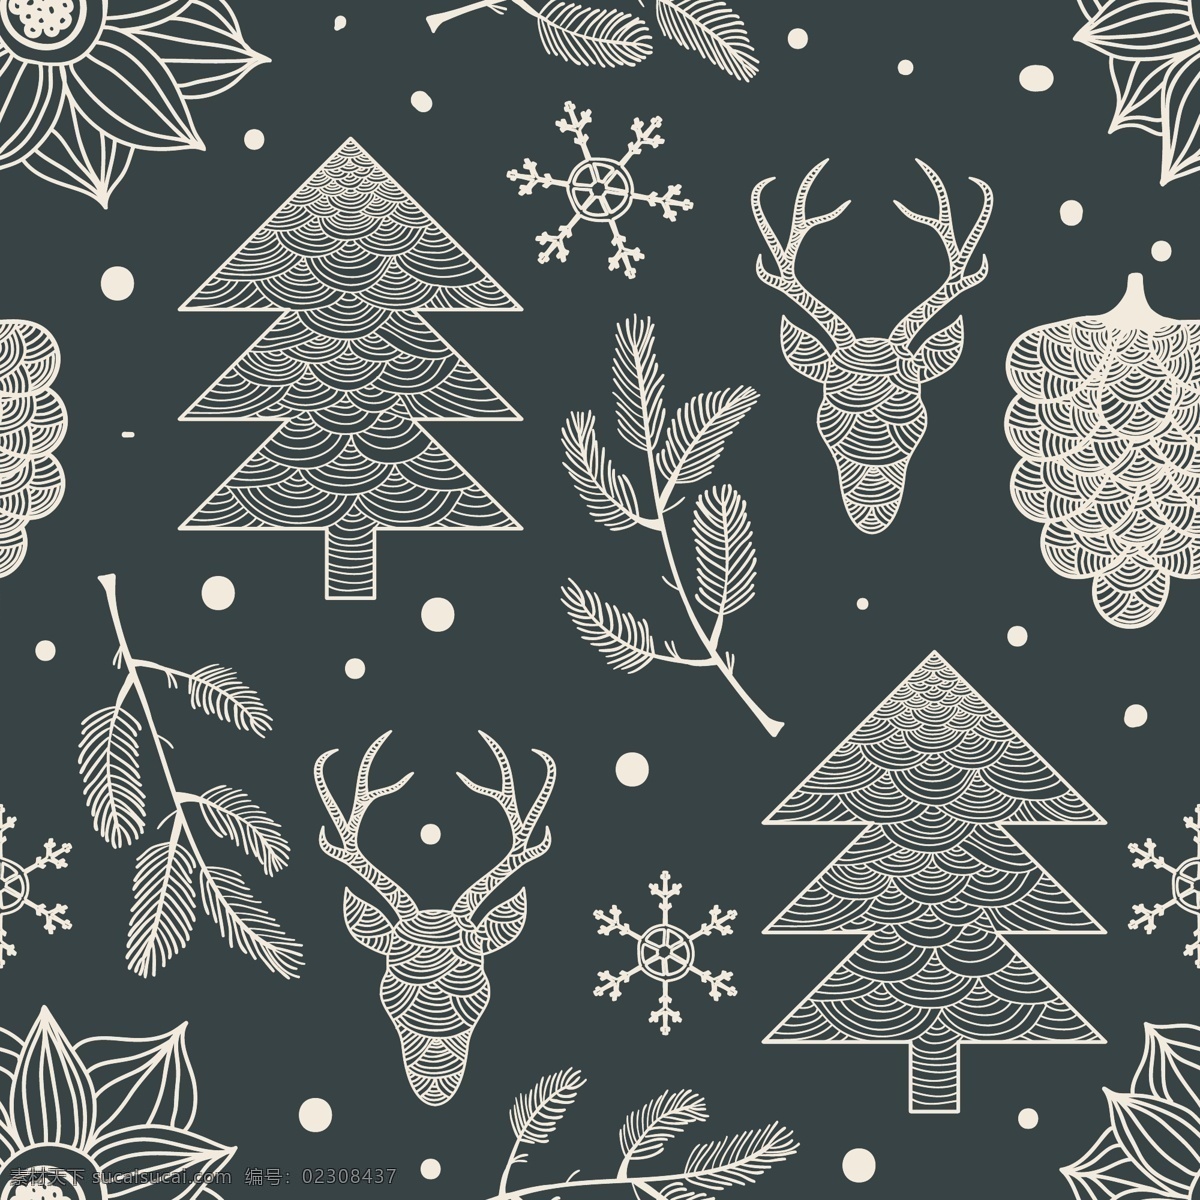 深色 圣诞 图案 背景 简洁 手绘 松树 线条 雪花 驯鹿 矢量图 花纹花边